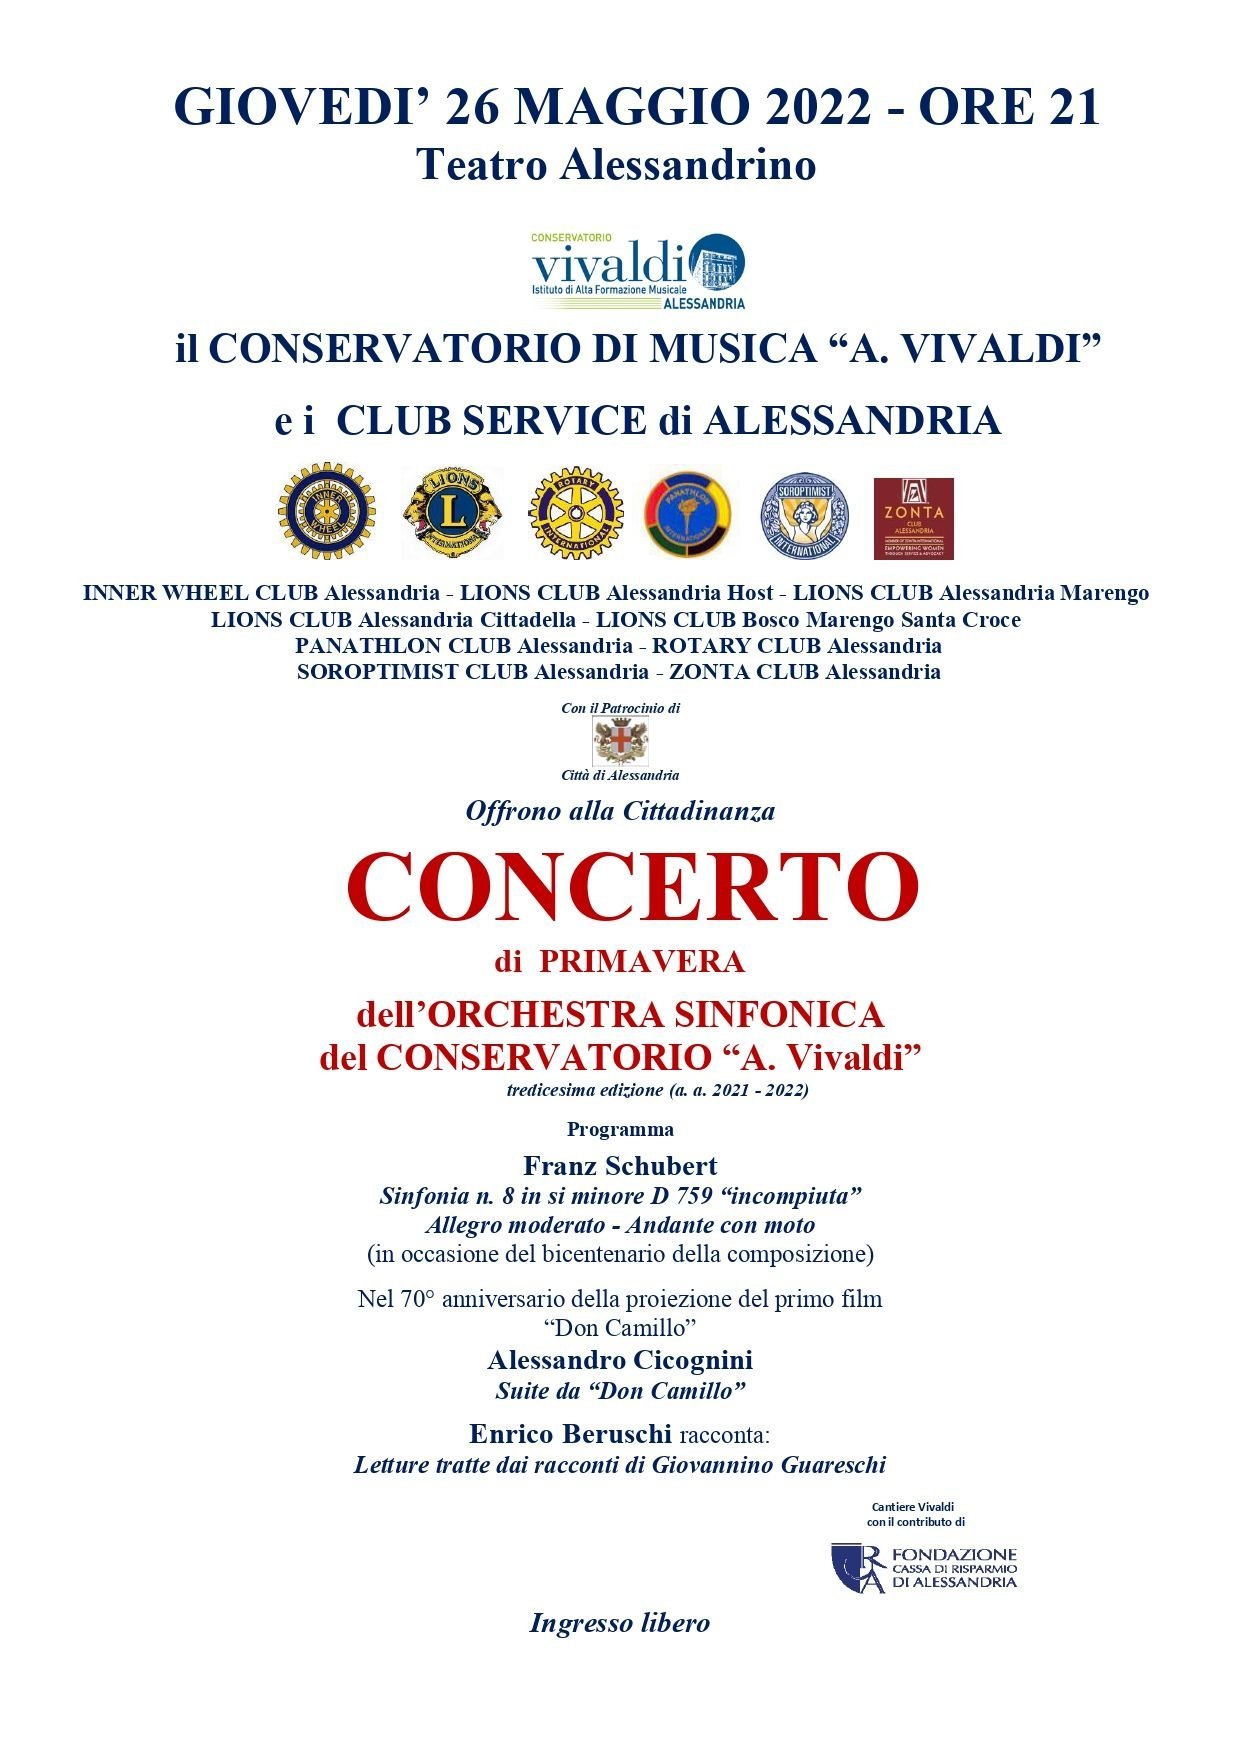 Il 26 maggio Concerto di Primavera dell’Orchestra Sinfonica del Conservatorio Vivaldi